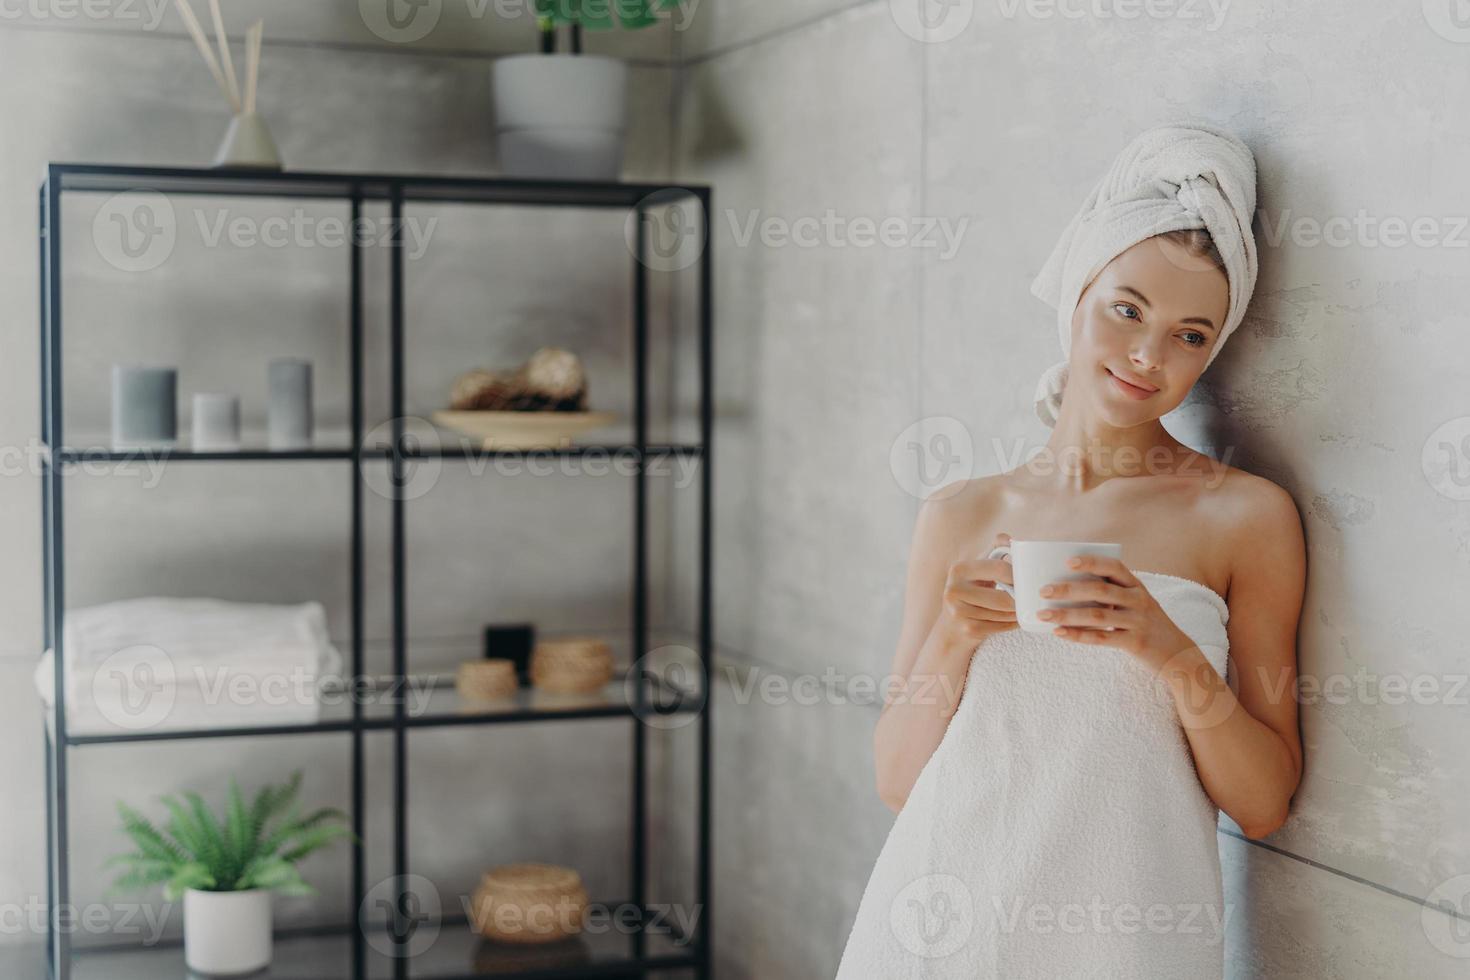 foto van rustige ontspannen vrouw poseert in handdoek tegen badkamer interieur, gewikkeld in badhanddoek, drinkt thee of koffie, heeft een schone perfecte huid, leunt tegen grijze muur. schoonheidsdag, spa en huidverzorging